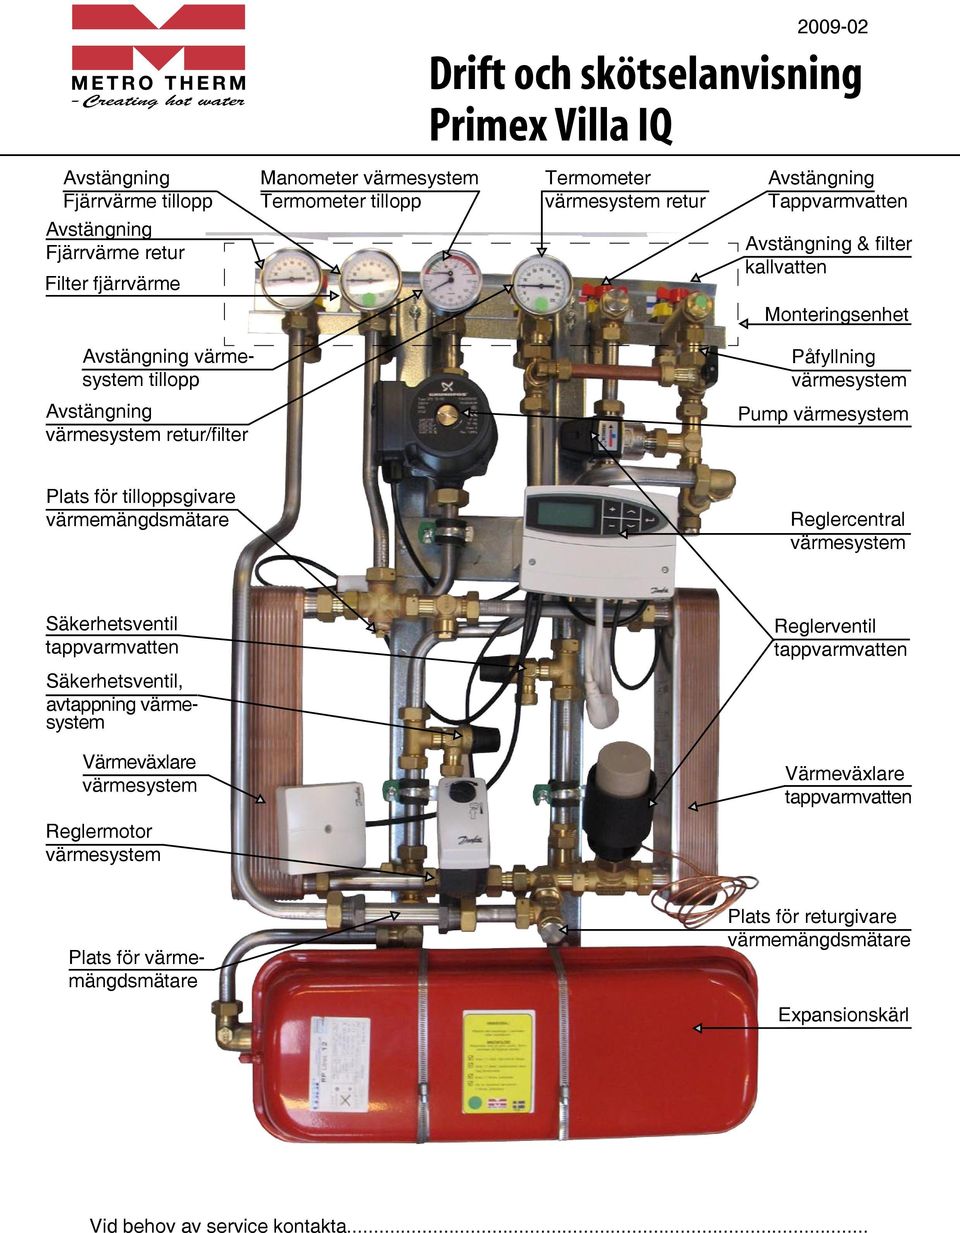 Pump värmesystem Plats för tilloppsgivare värmemängdsmätare Reglercentral värmesystem Säkerhetsventil tappvarmvatten Reglerventil tappvarmvatten Säkerhetsventil, avtappning värmesystem